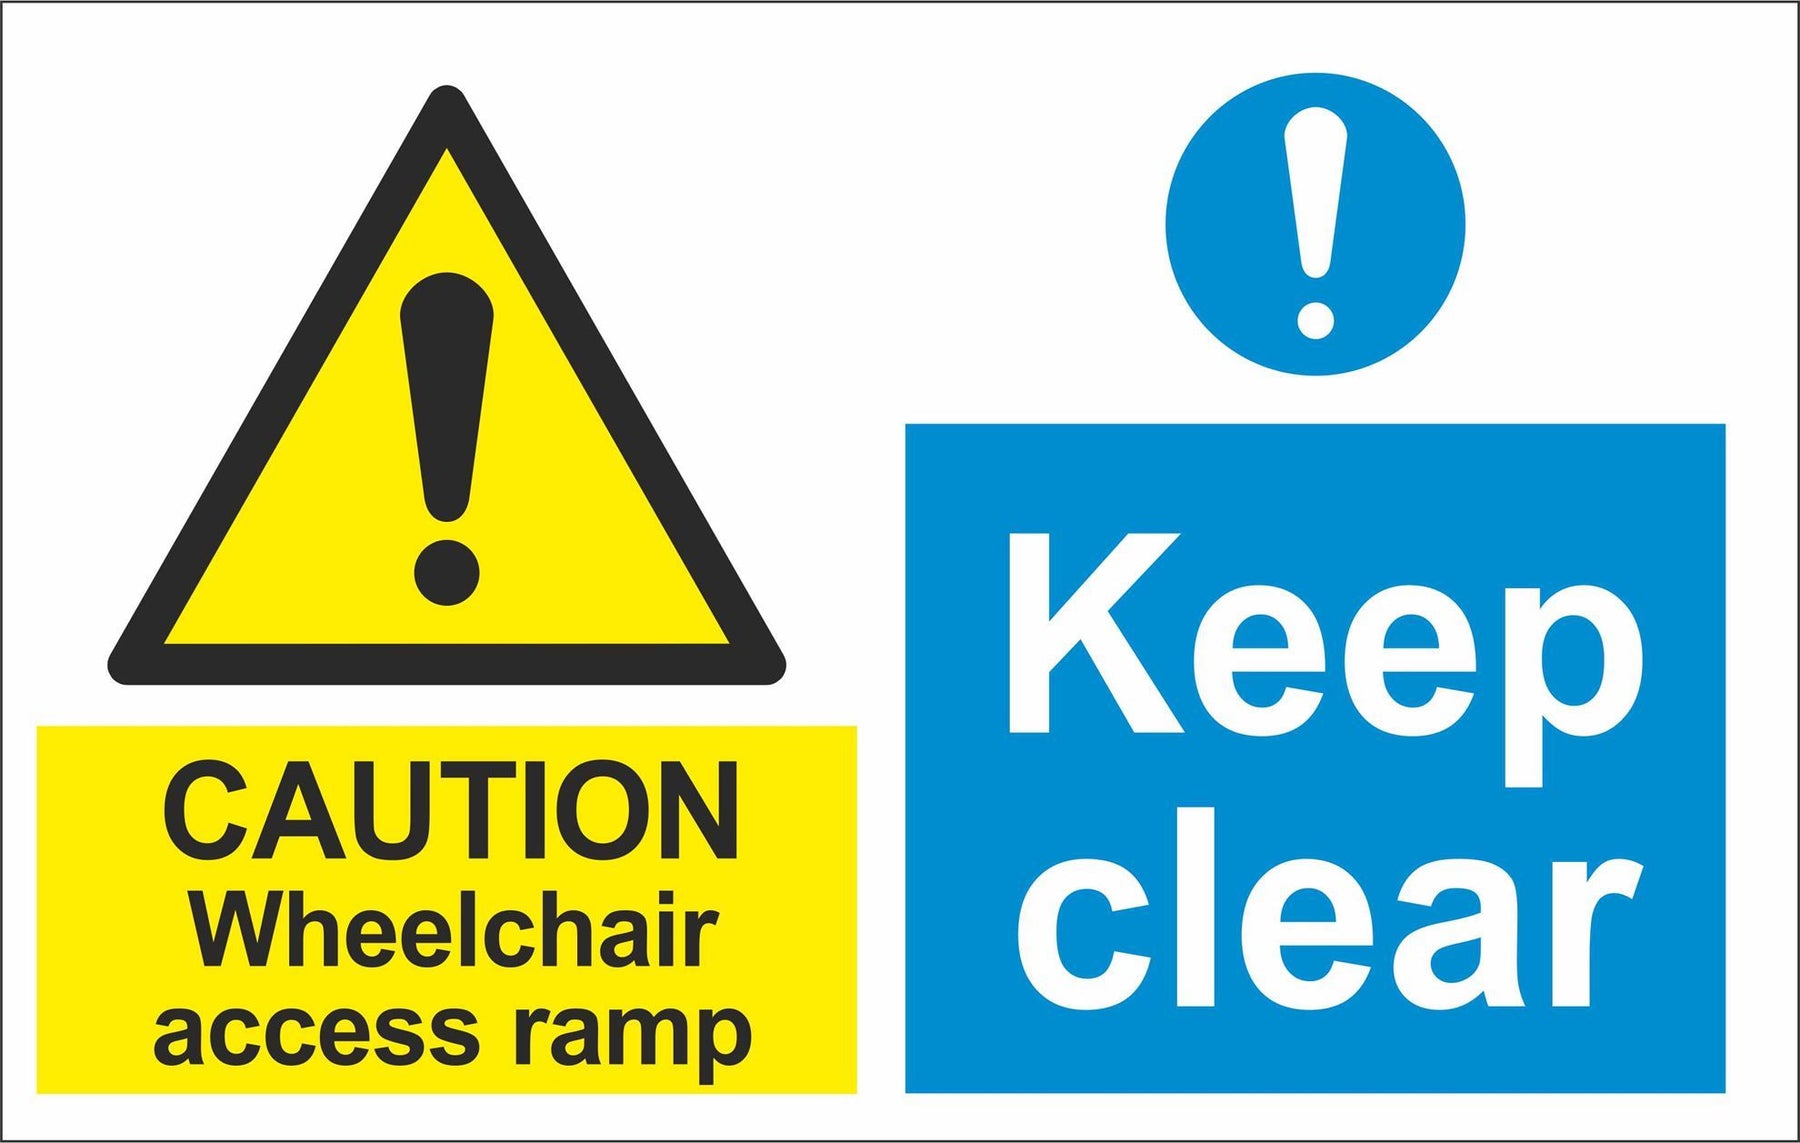 CAUTION Wheelchair access ramp Keep clear